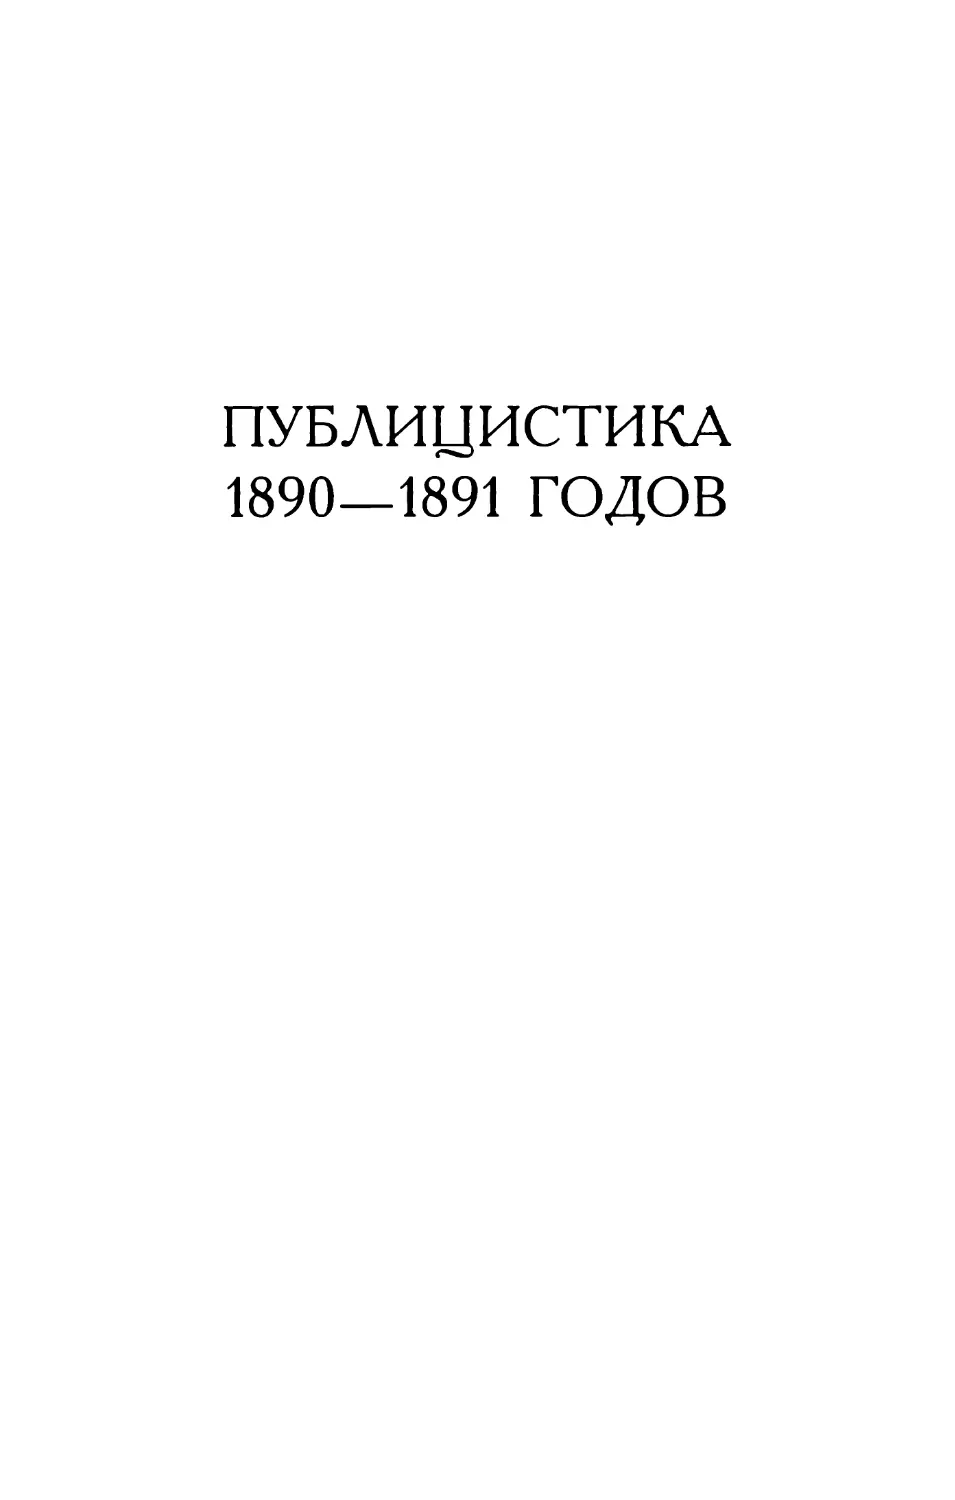 Публицистика 1890—1891 годов